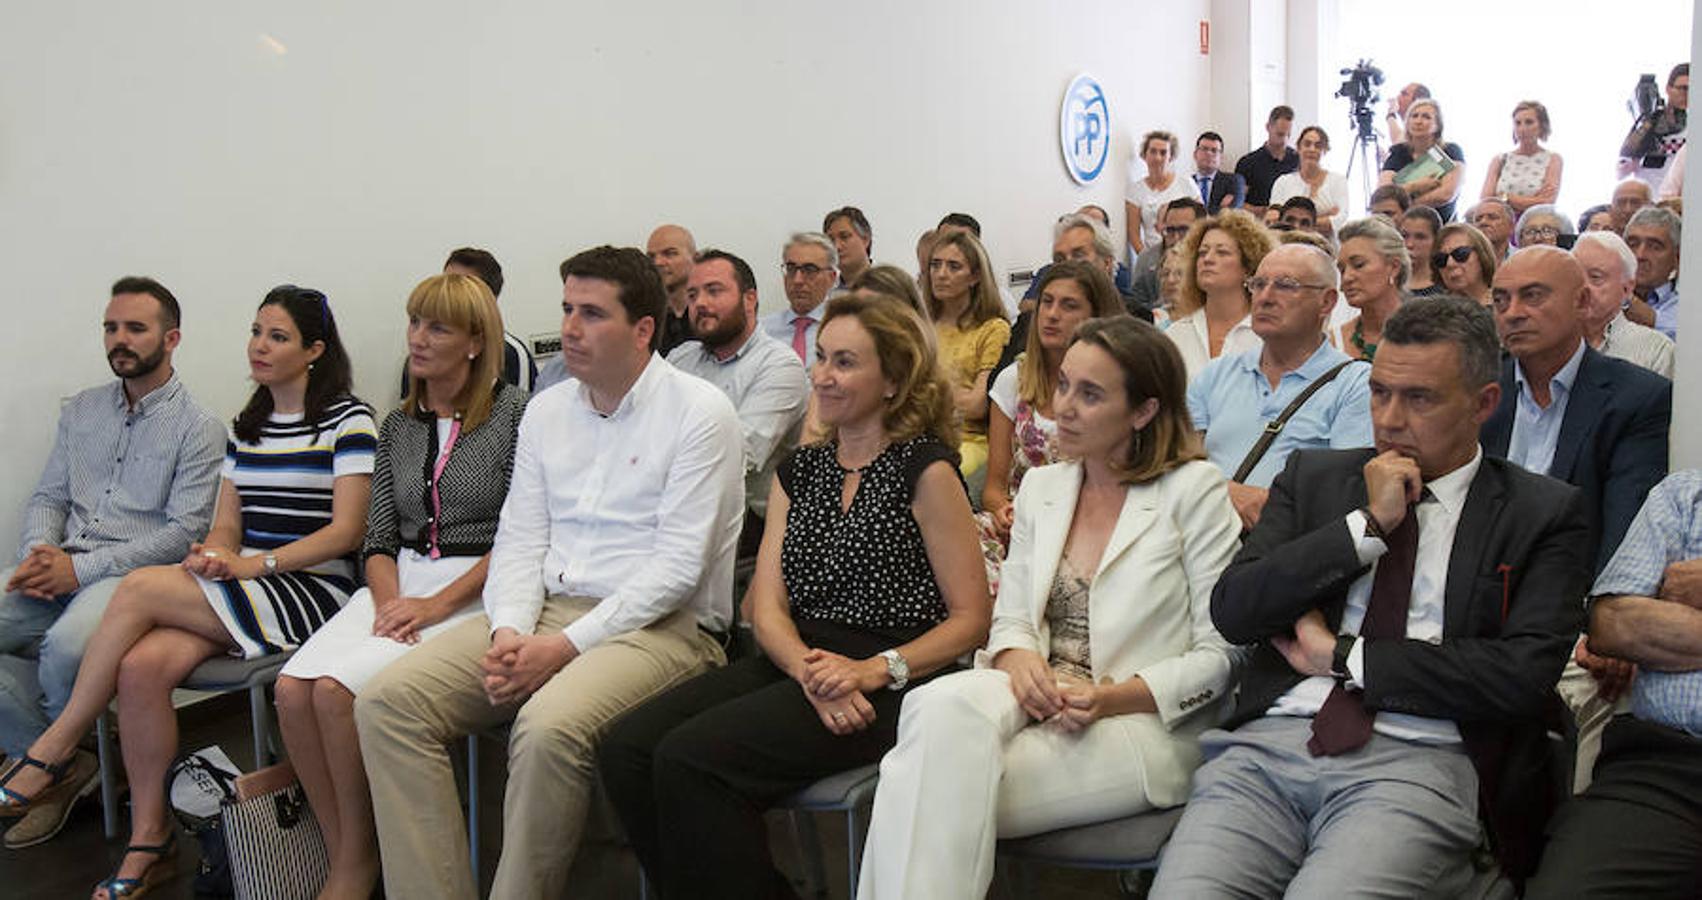 Pablo Casado ha participado en un acto con militantes del PP riojano en el que ha estado acompañado el presidente del partido en La Rioja. El candidato a suceder a Rajoy como cabeza visible del Partido Popular ha expuesto sus planes para el partido.